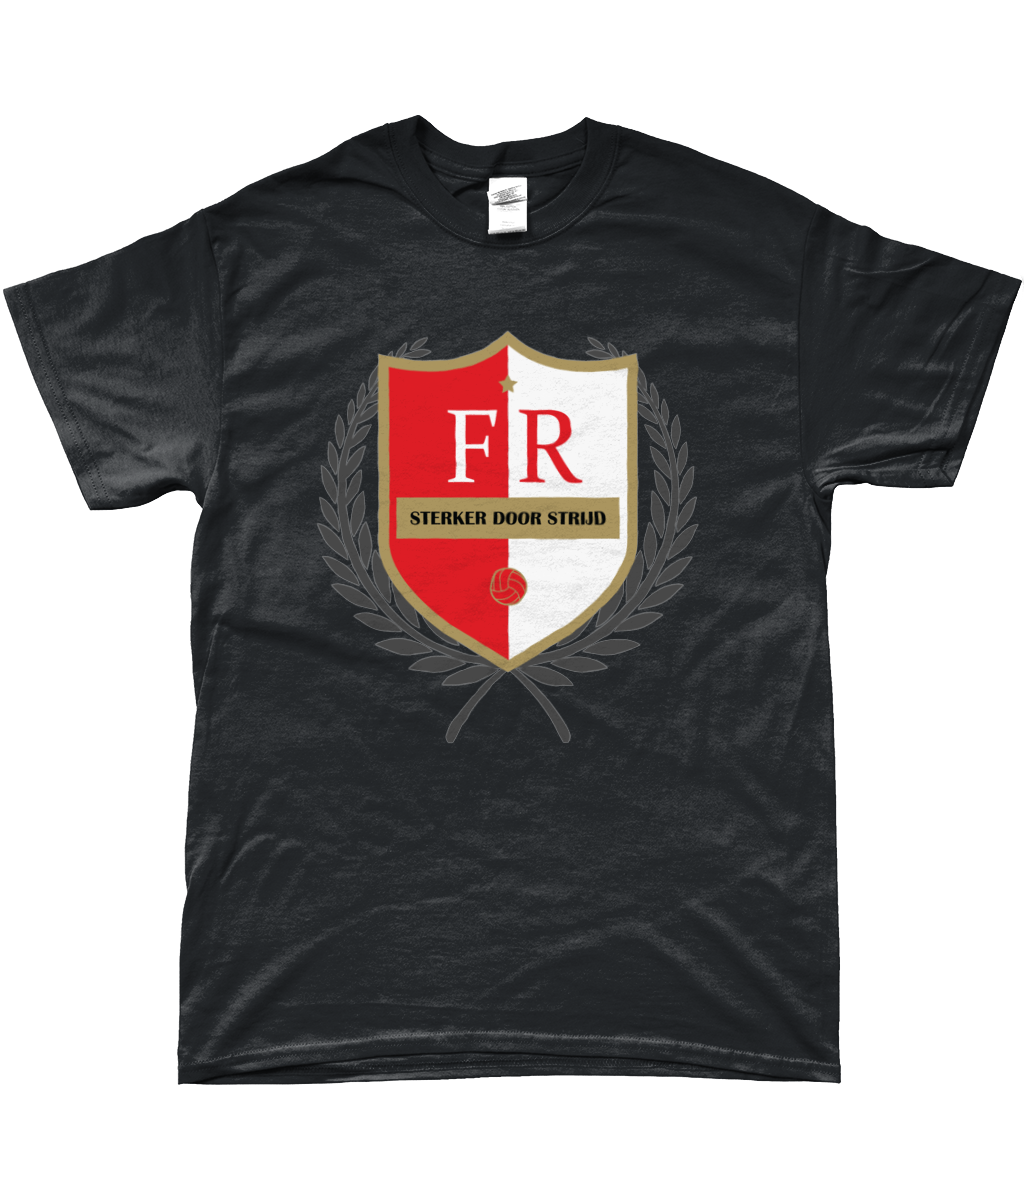 Feyenoord - Sterker Door Strijd T-Shirt